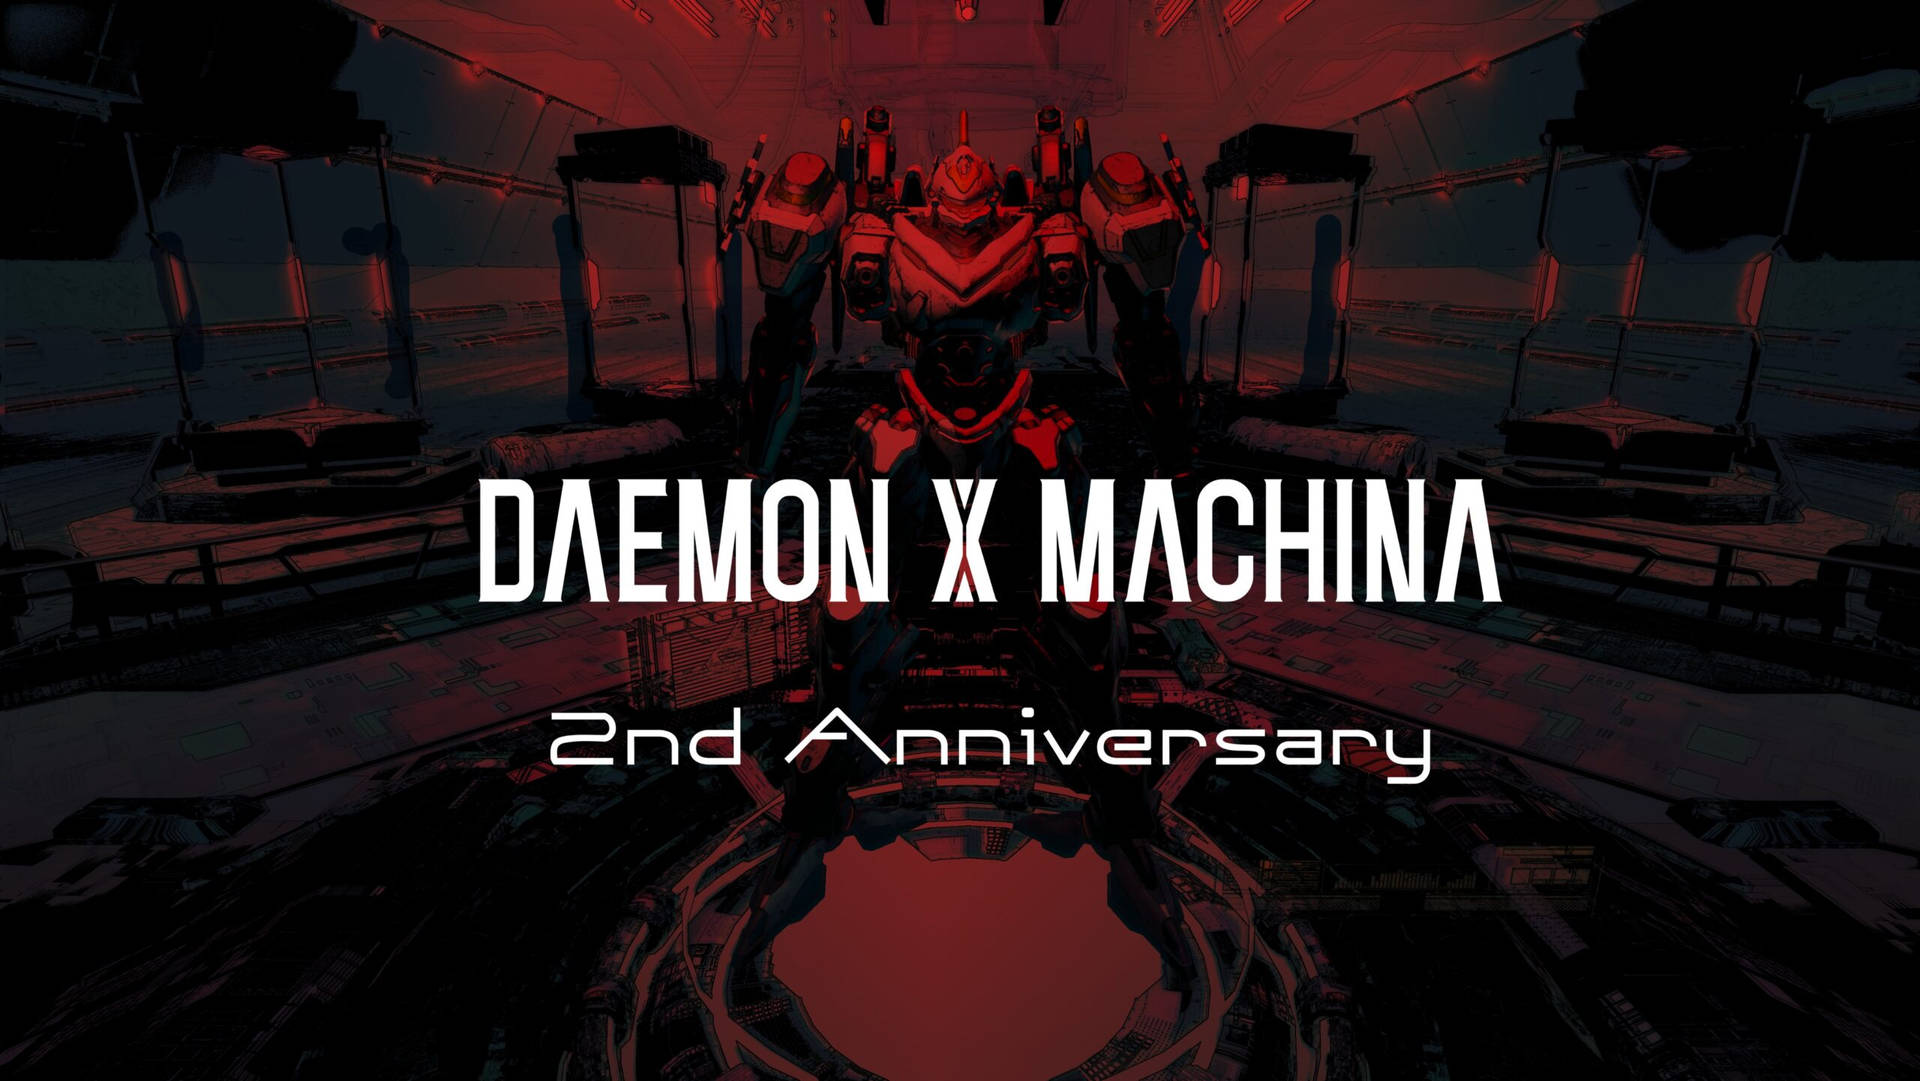 Daemon X Machina 2nd Anniversary Background